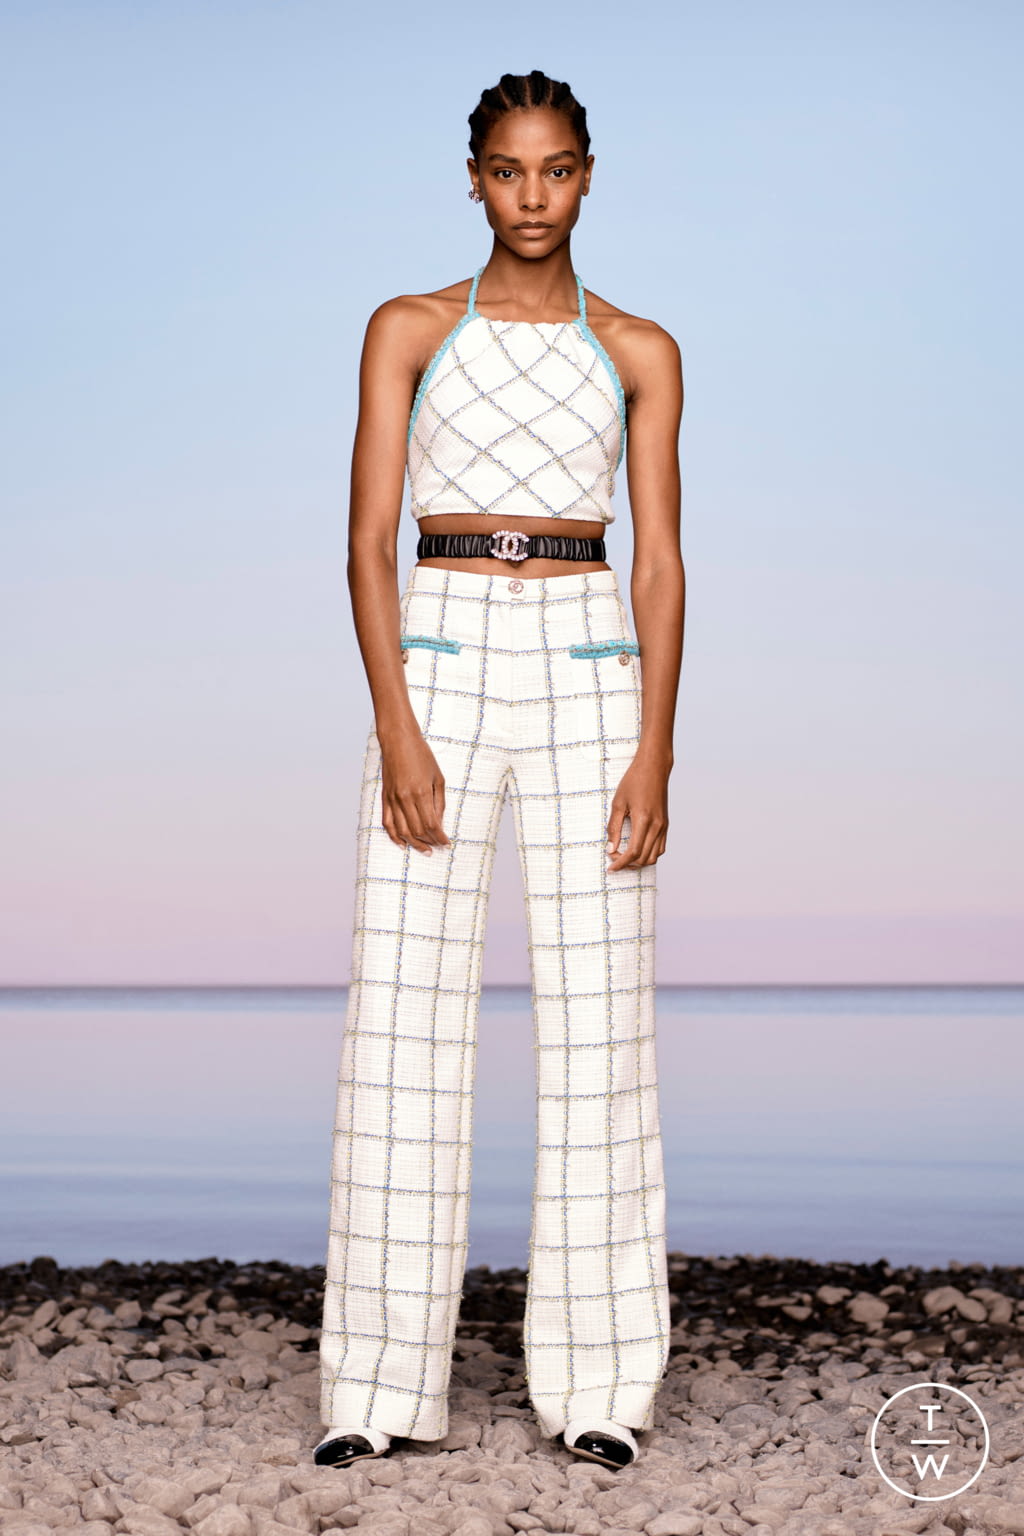 Chanel RS21 womenswear #17 - Tagwalk: The Fashion Search Engine